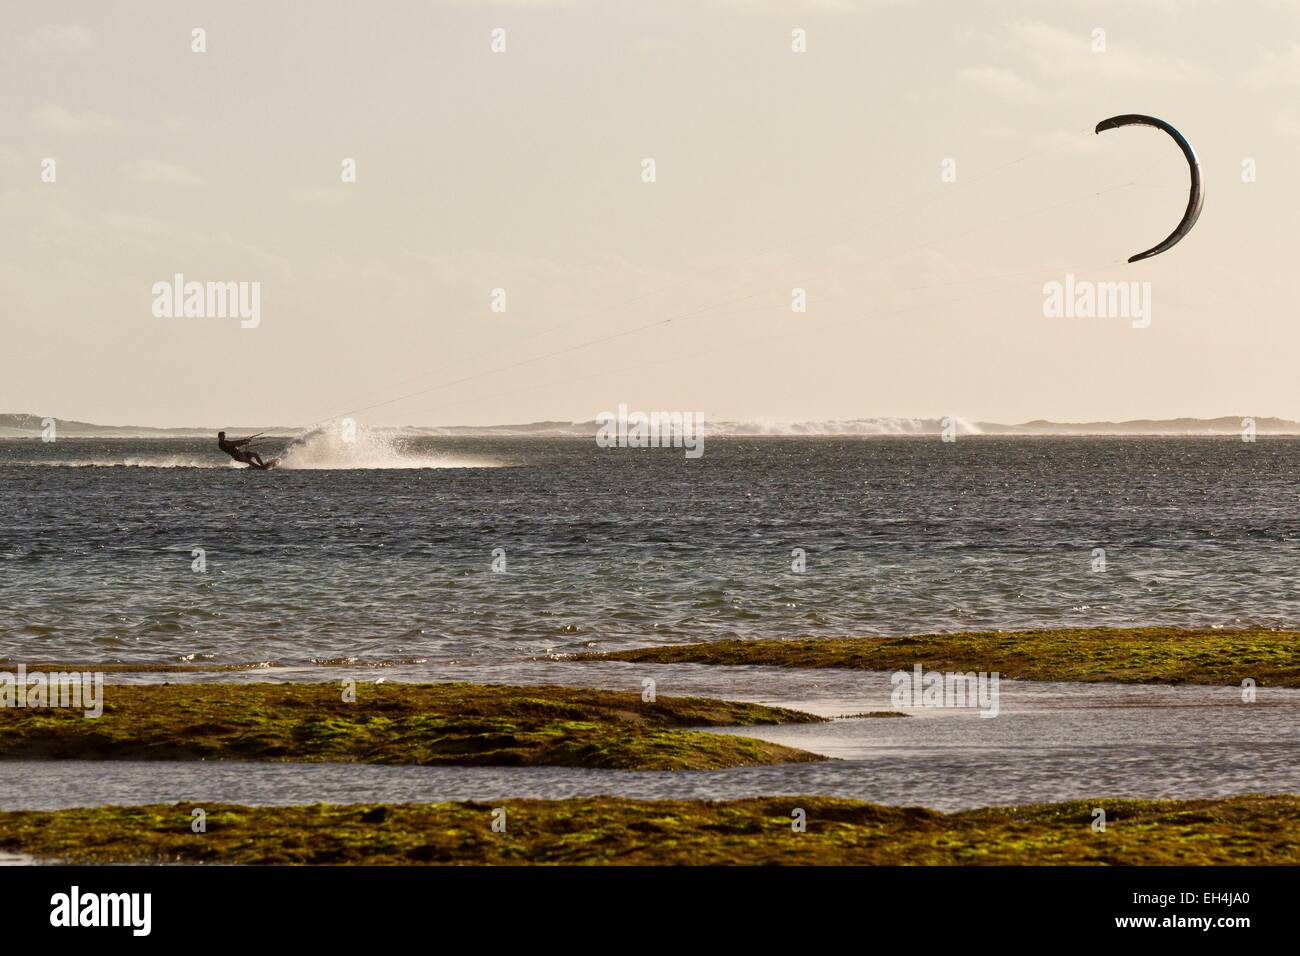 Mauricio, Costa Sur Oeste, distrito de Black River, kitesurfistas en acción en la laguna Foto de stock